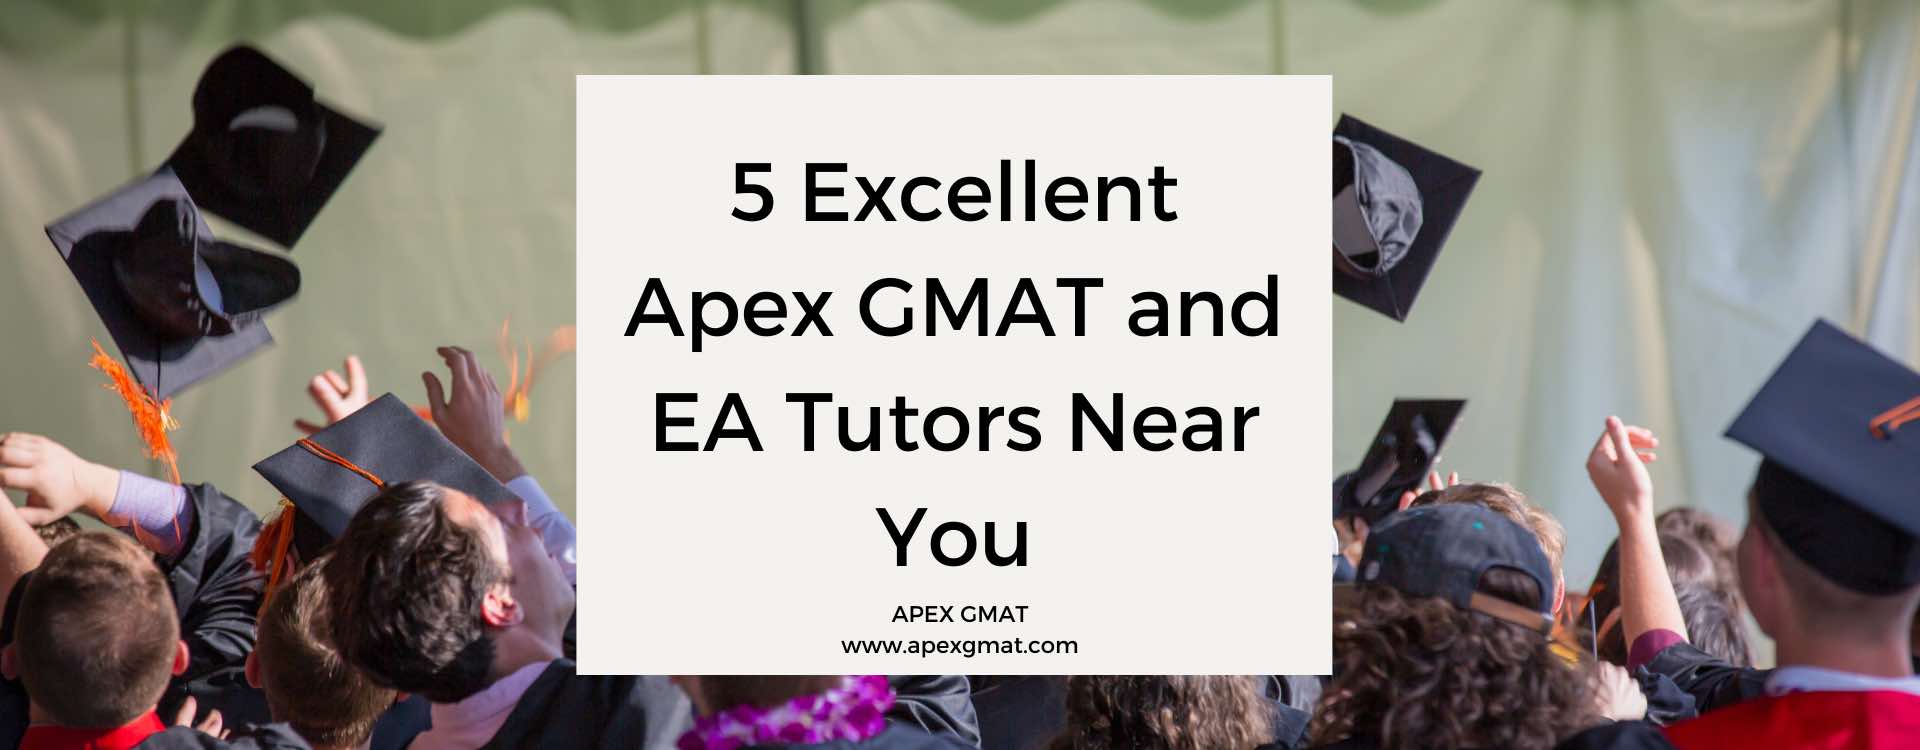 5 Excellent Apex GMAT and EA Tutors Near You